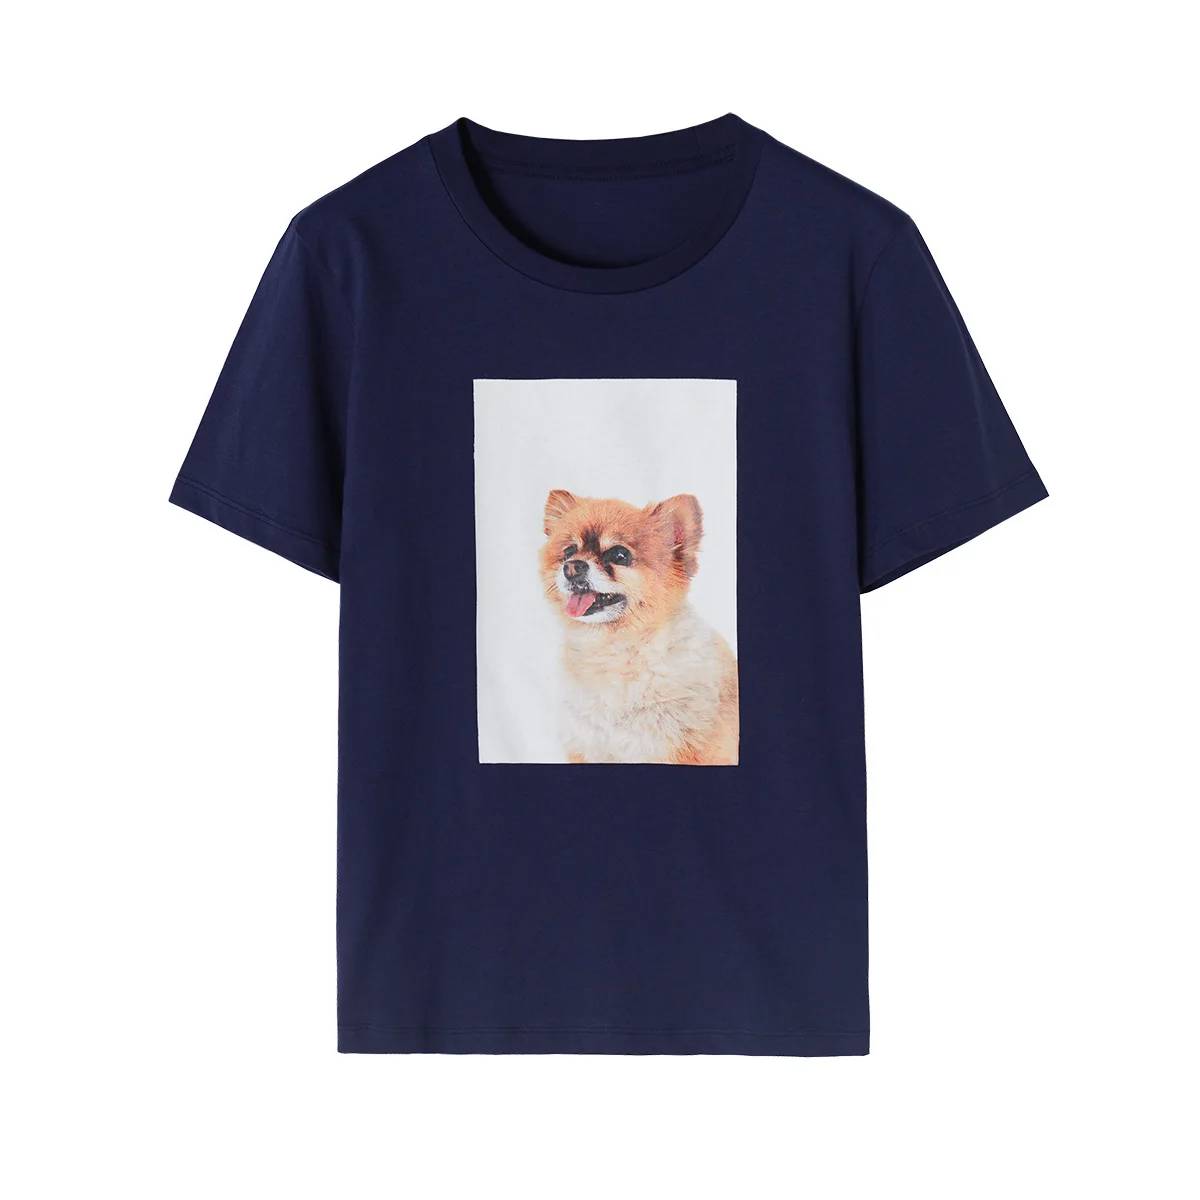 Women T-shirt 2022 Spring New Women's Puppy Print Short Sleeve Cotton T-Shirt